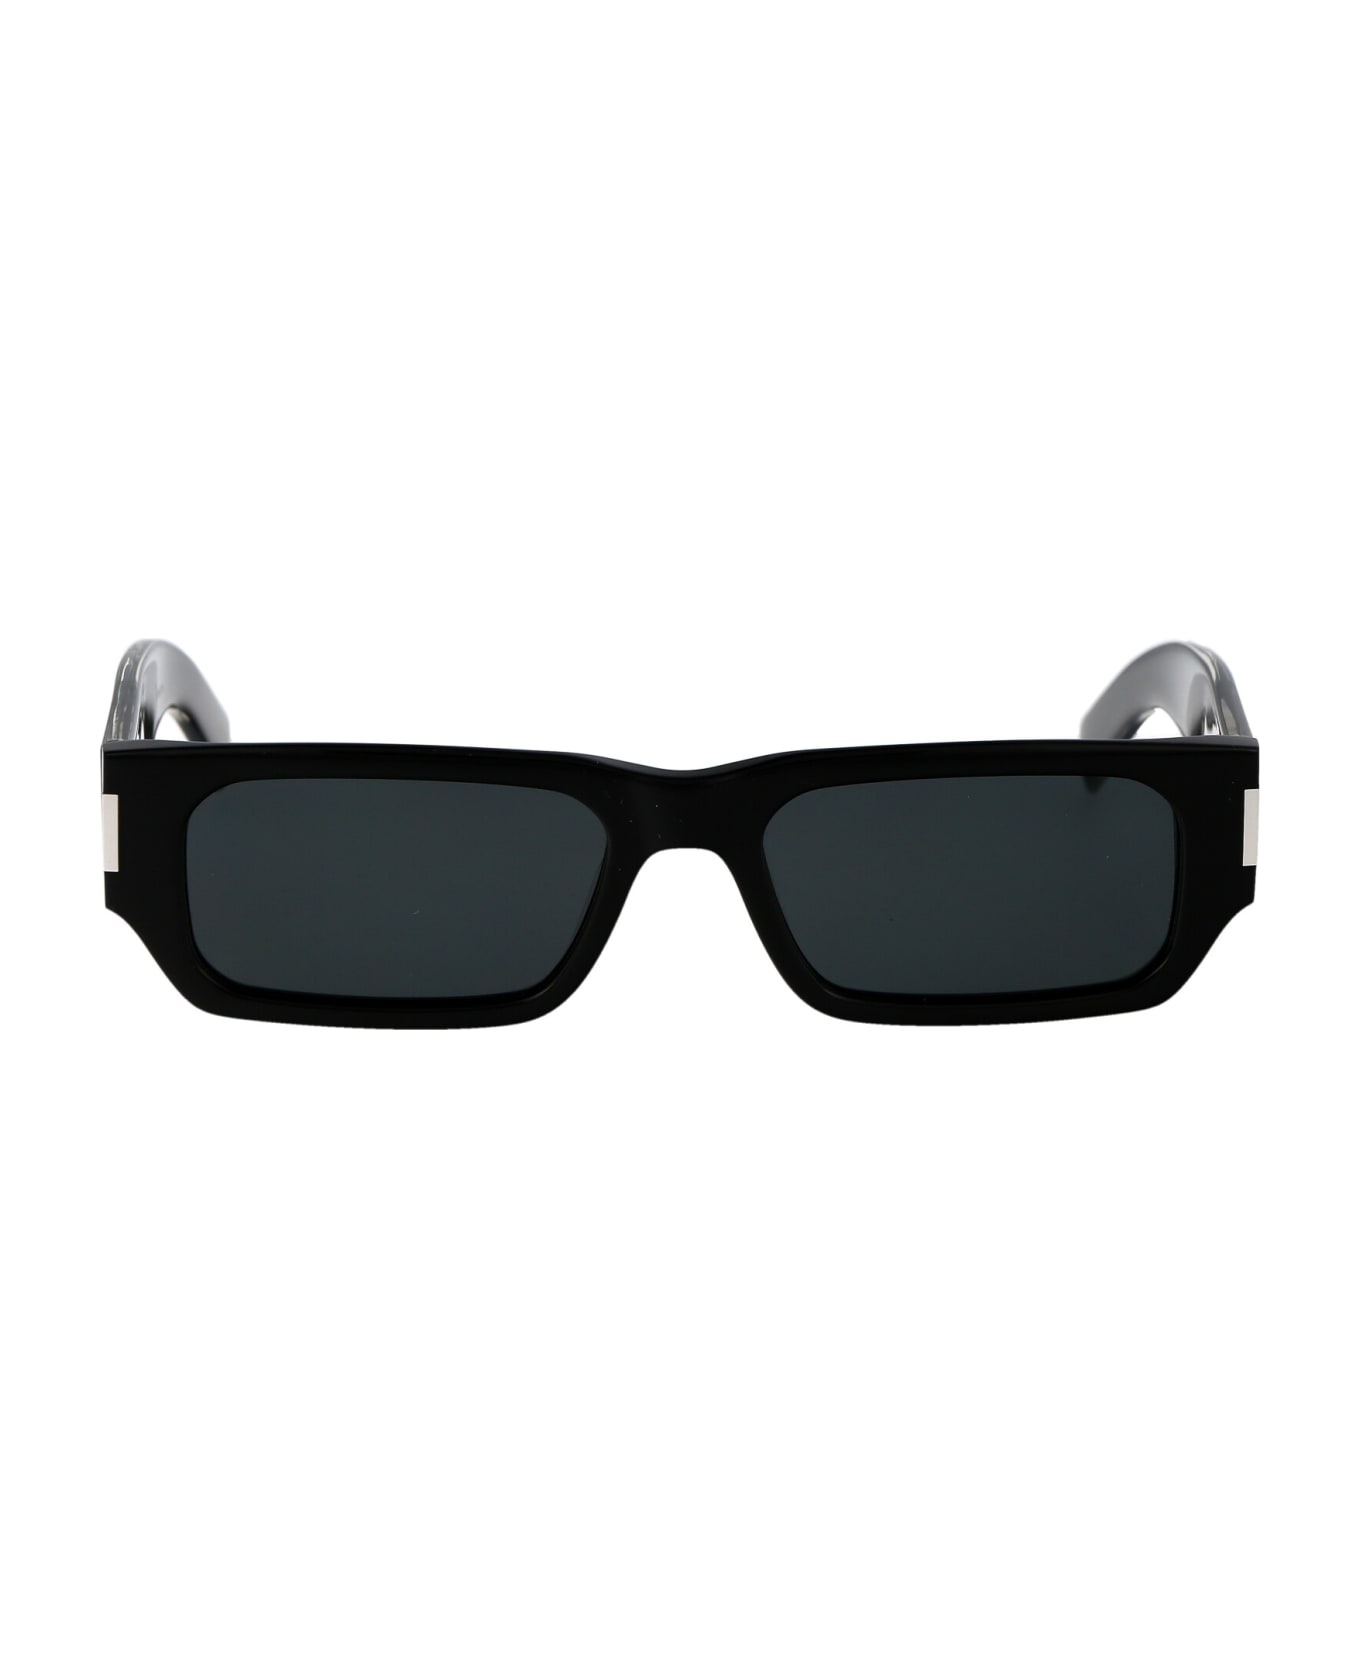 Saint Laurent Eyewear Sl 660 Sunglasses - 001 BLACK CRYSTAL BLACK